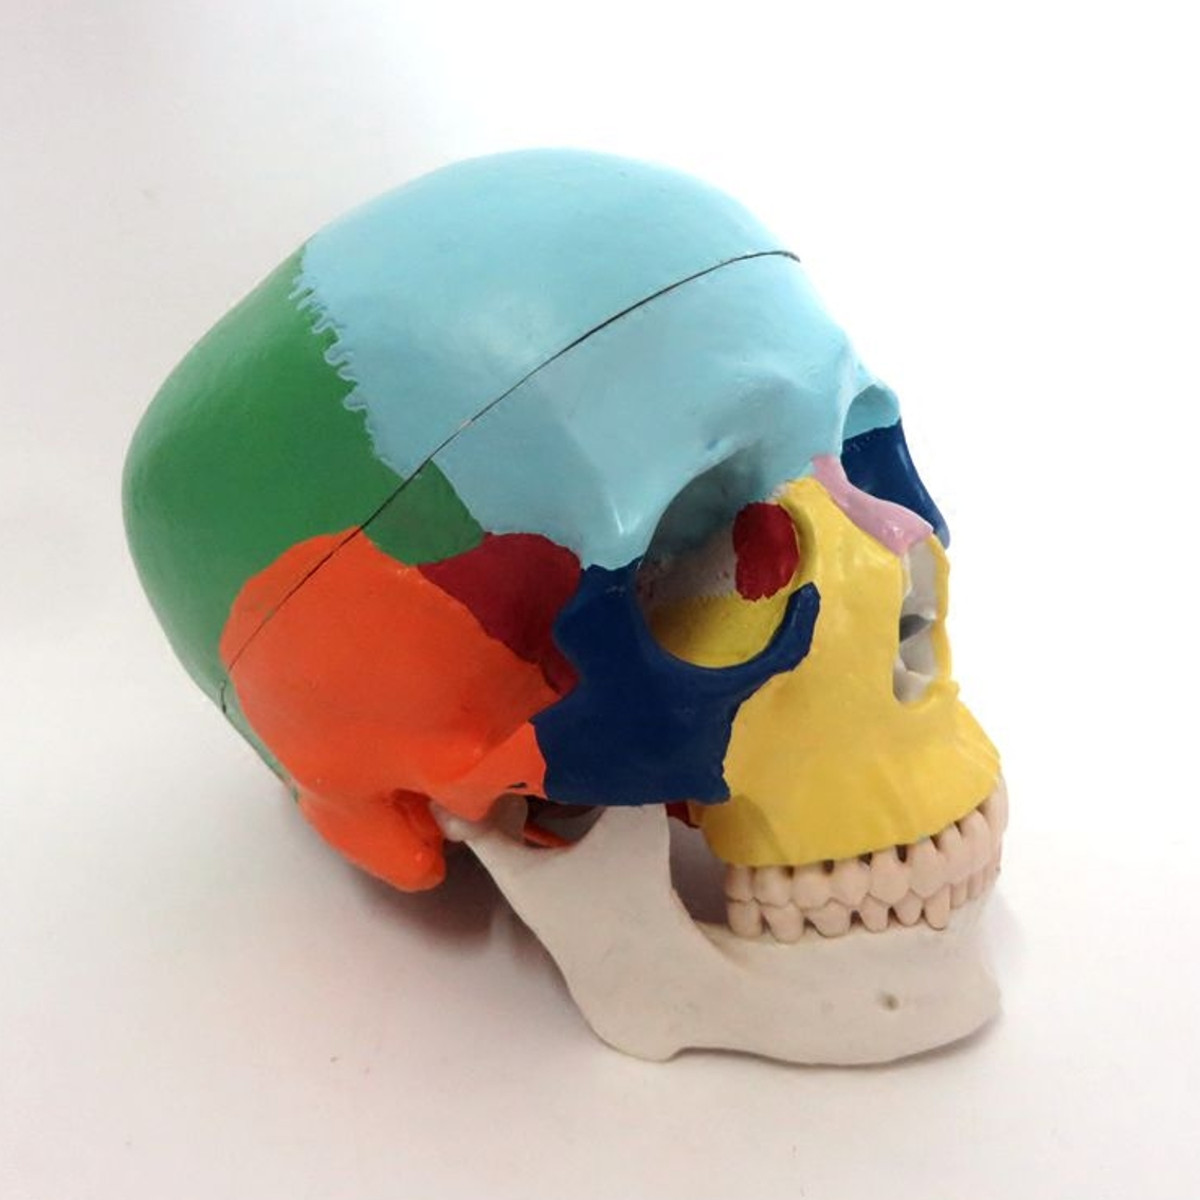 

1: 1 Colorful Голова человека Череп Модель скелета, 3 части, Анатомия Медицинская Наука Образование